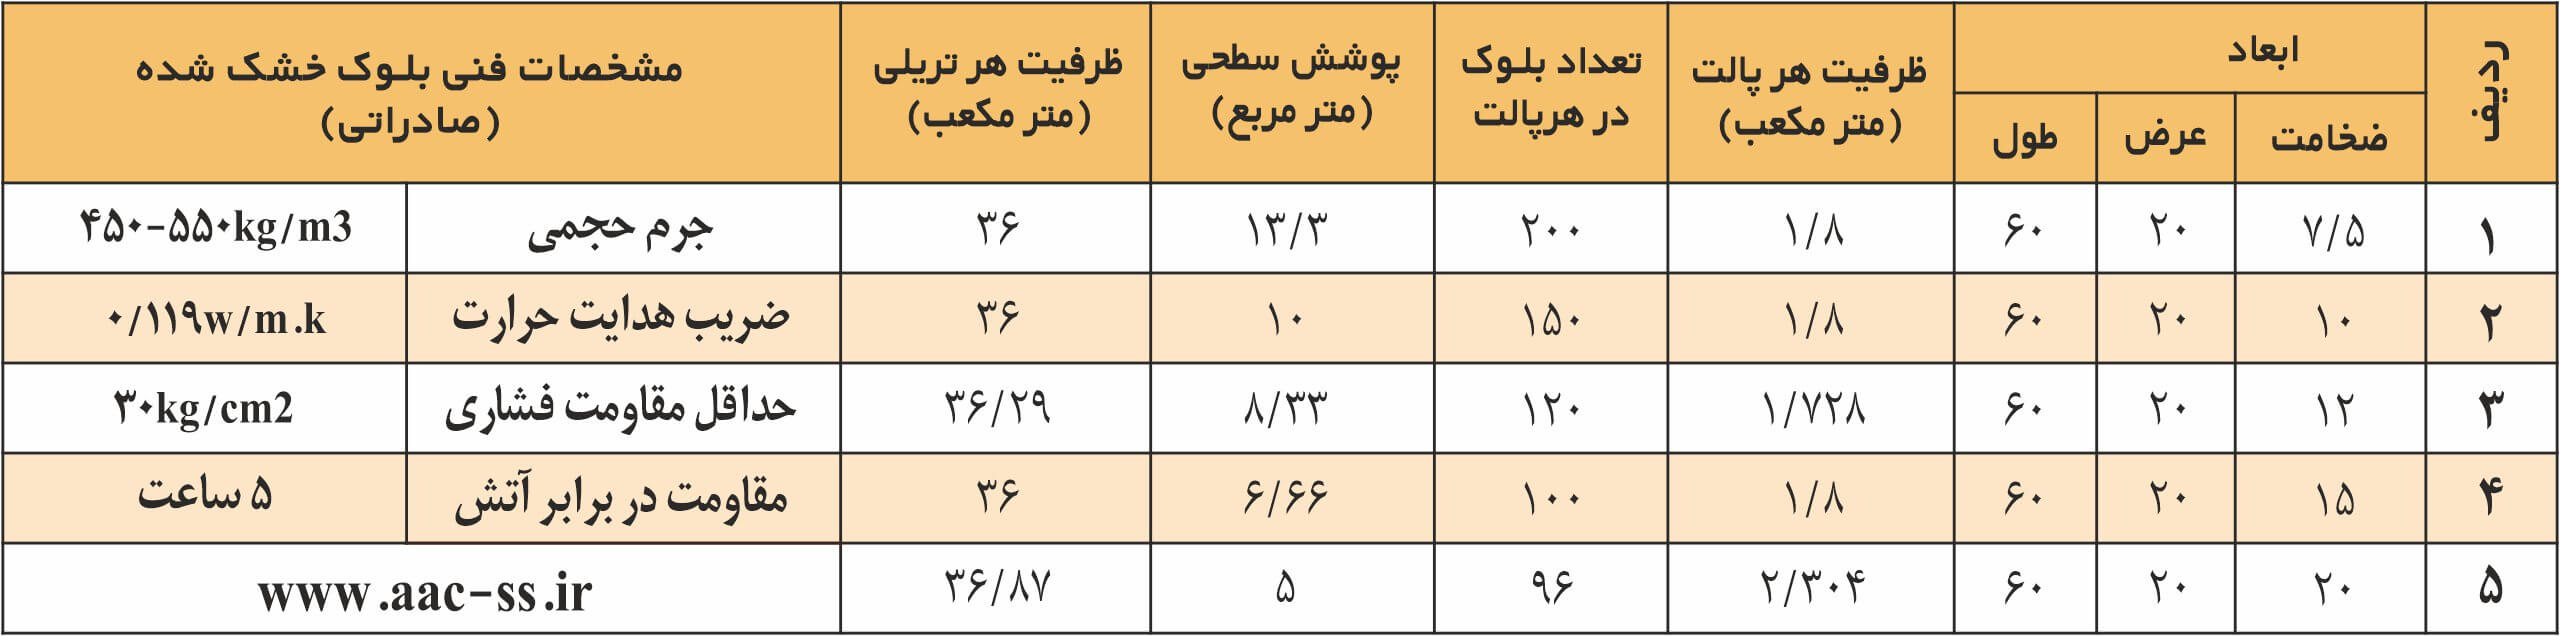 جدول مشخصات aac